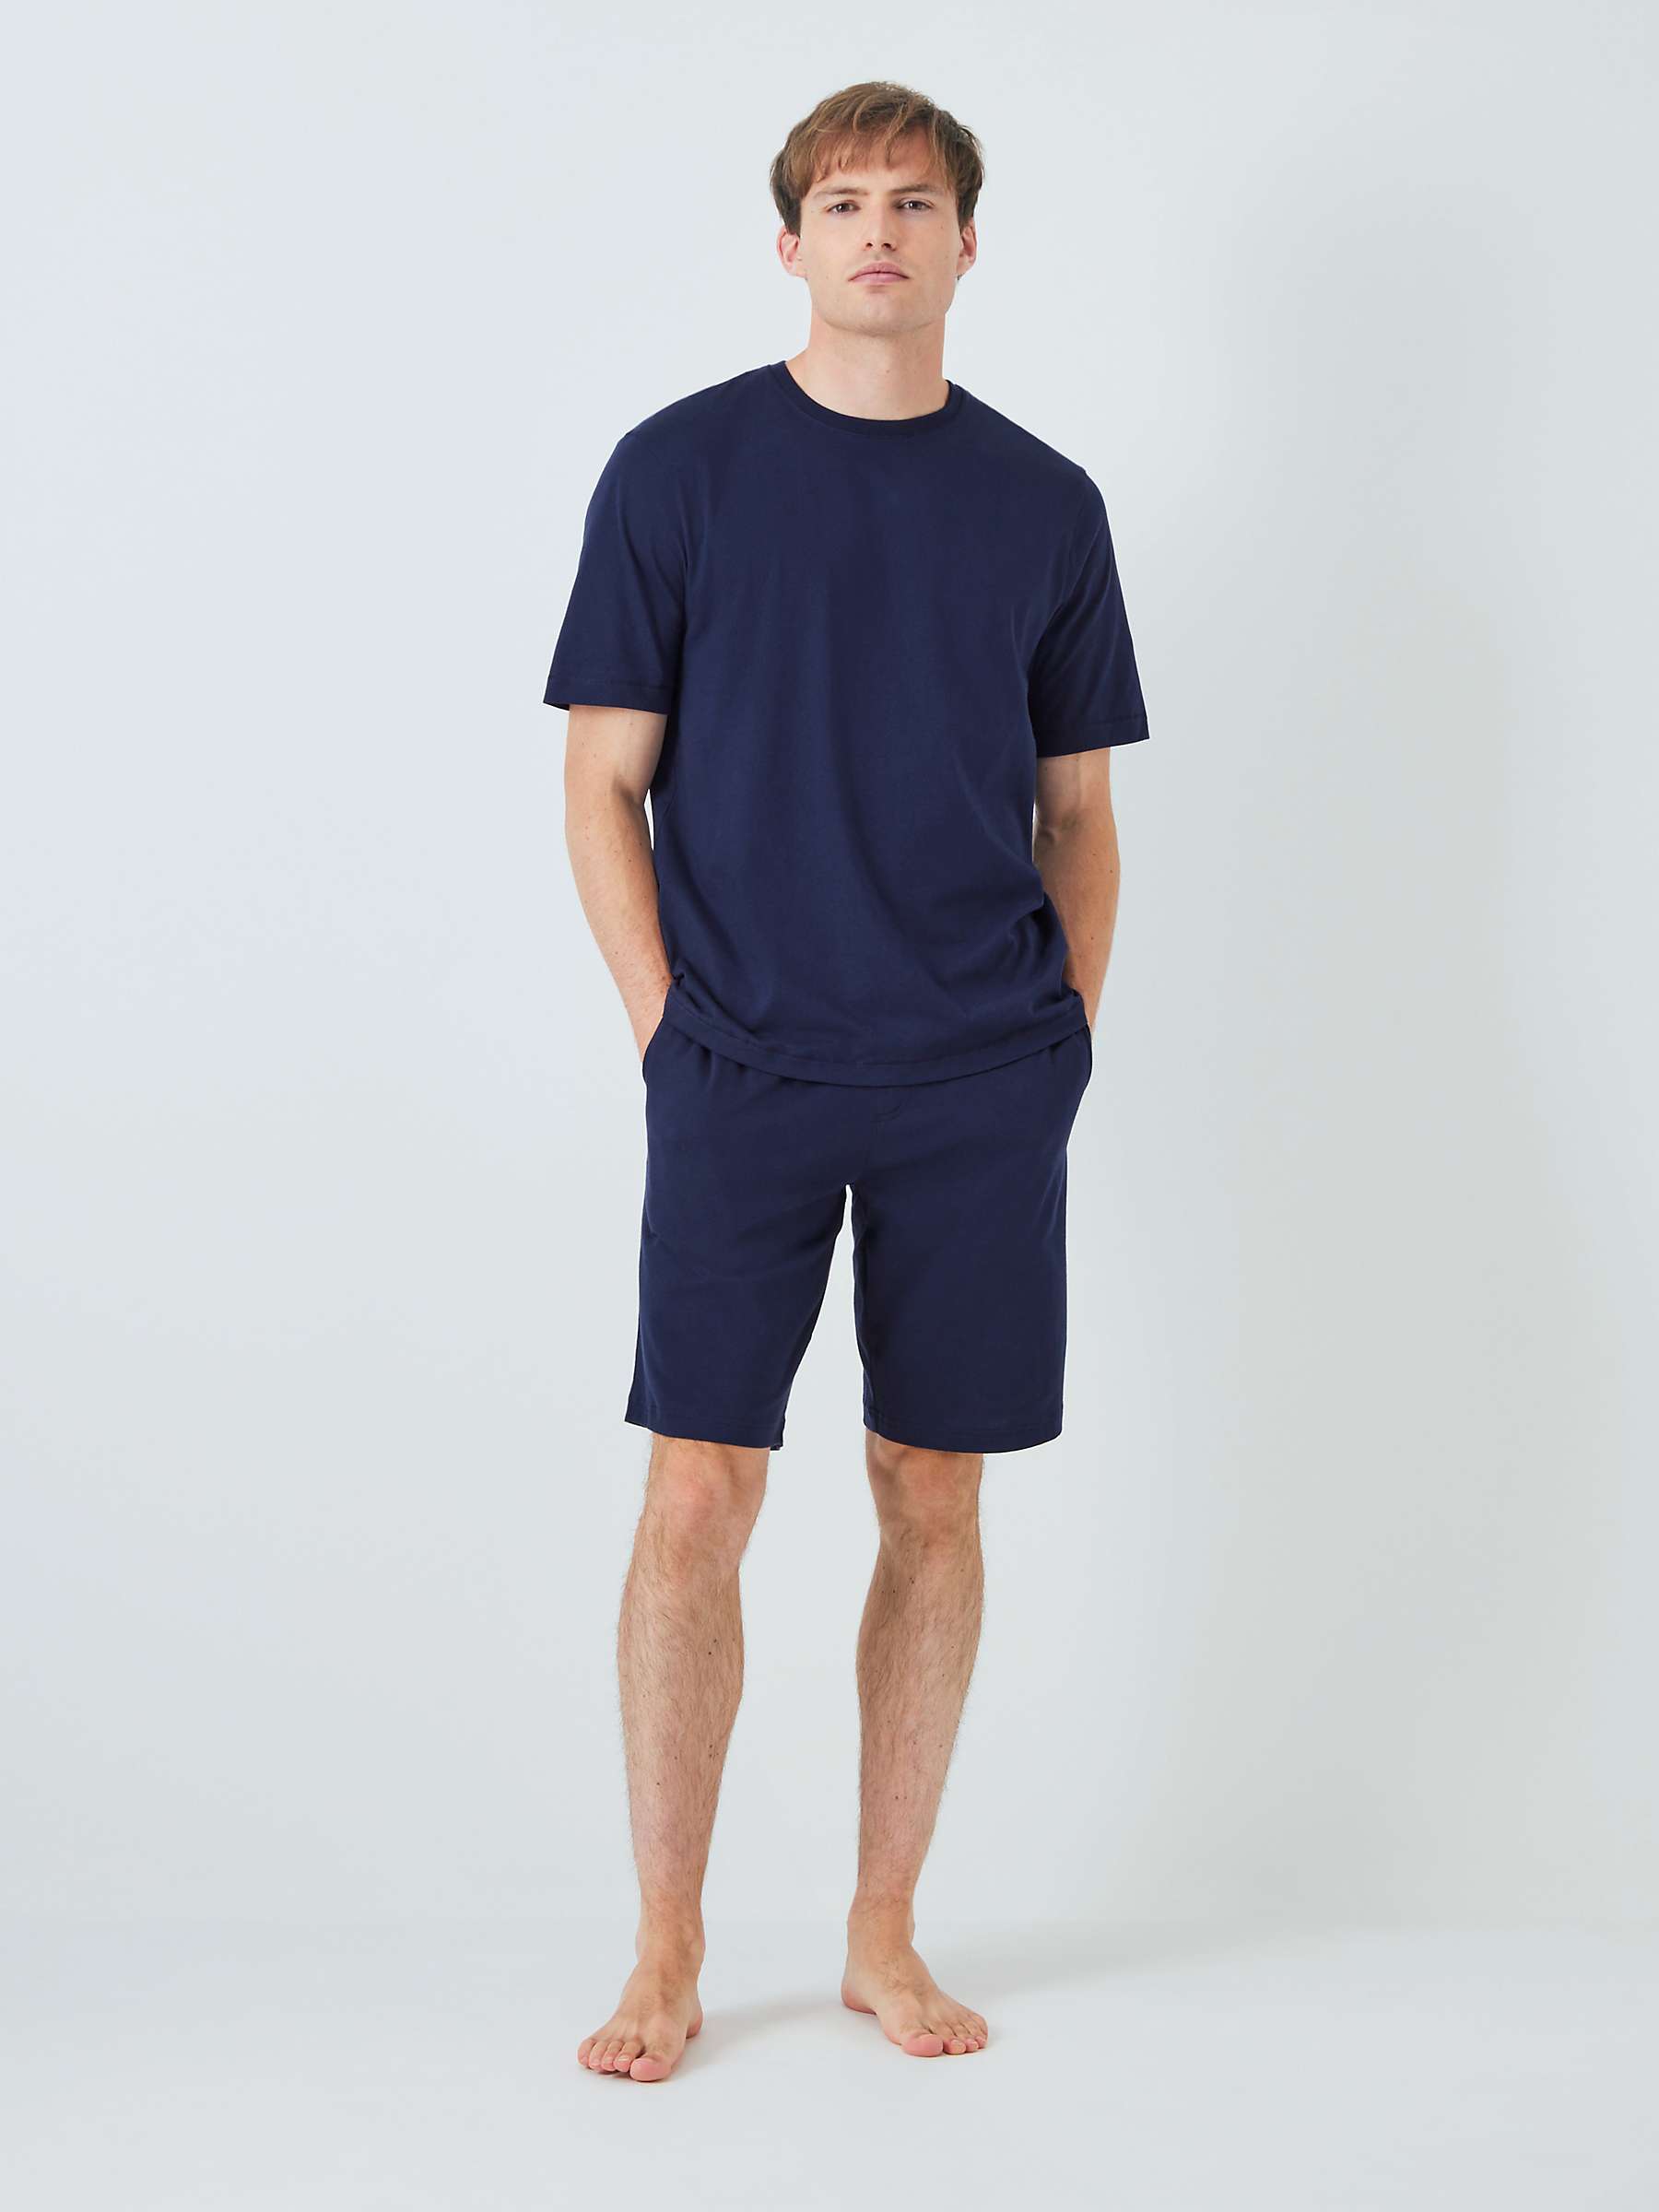 Buy John Lewis ANYDAY Jersey T-Shirt & Shorts Pyjama Set, Navy Online at johnlewis.com